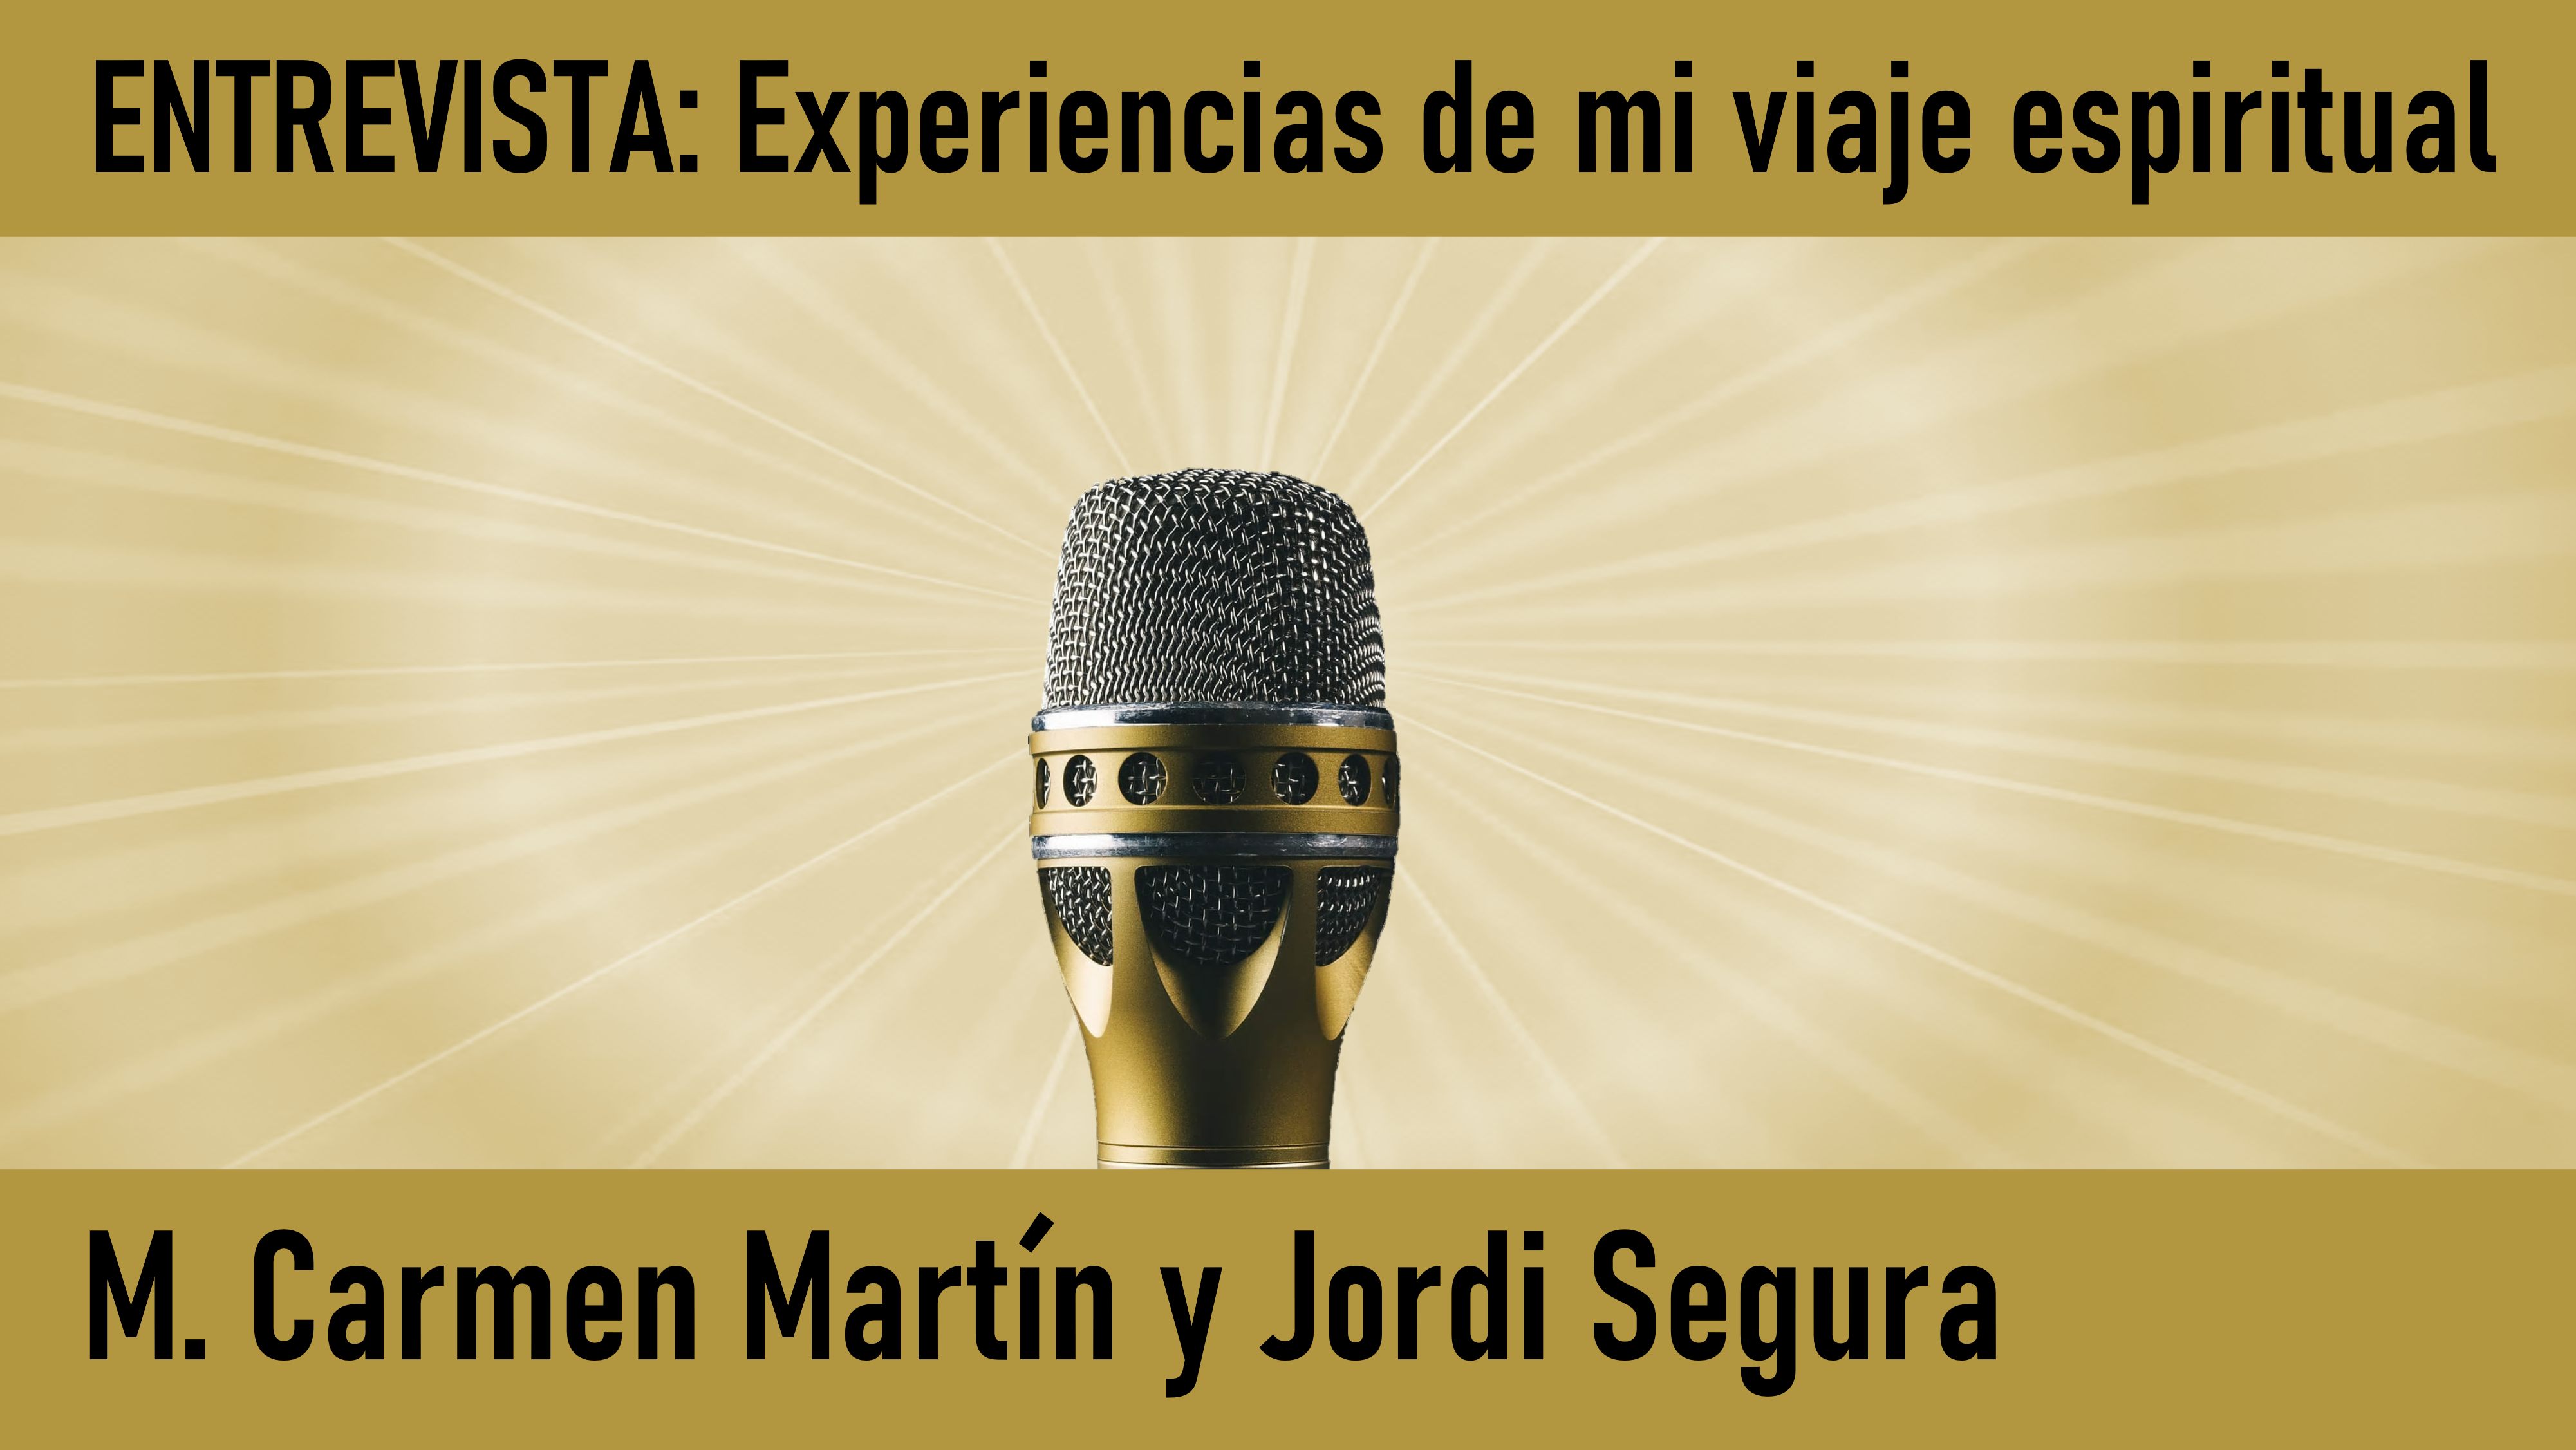 19 Junio 2020 Entrevista: Experiencias de mi viaje espiritual. M.Carmen Martín y Jordi Segura